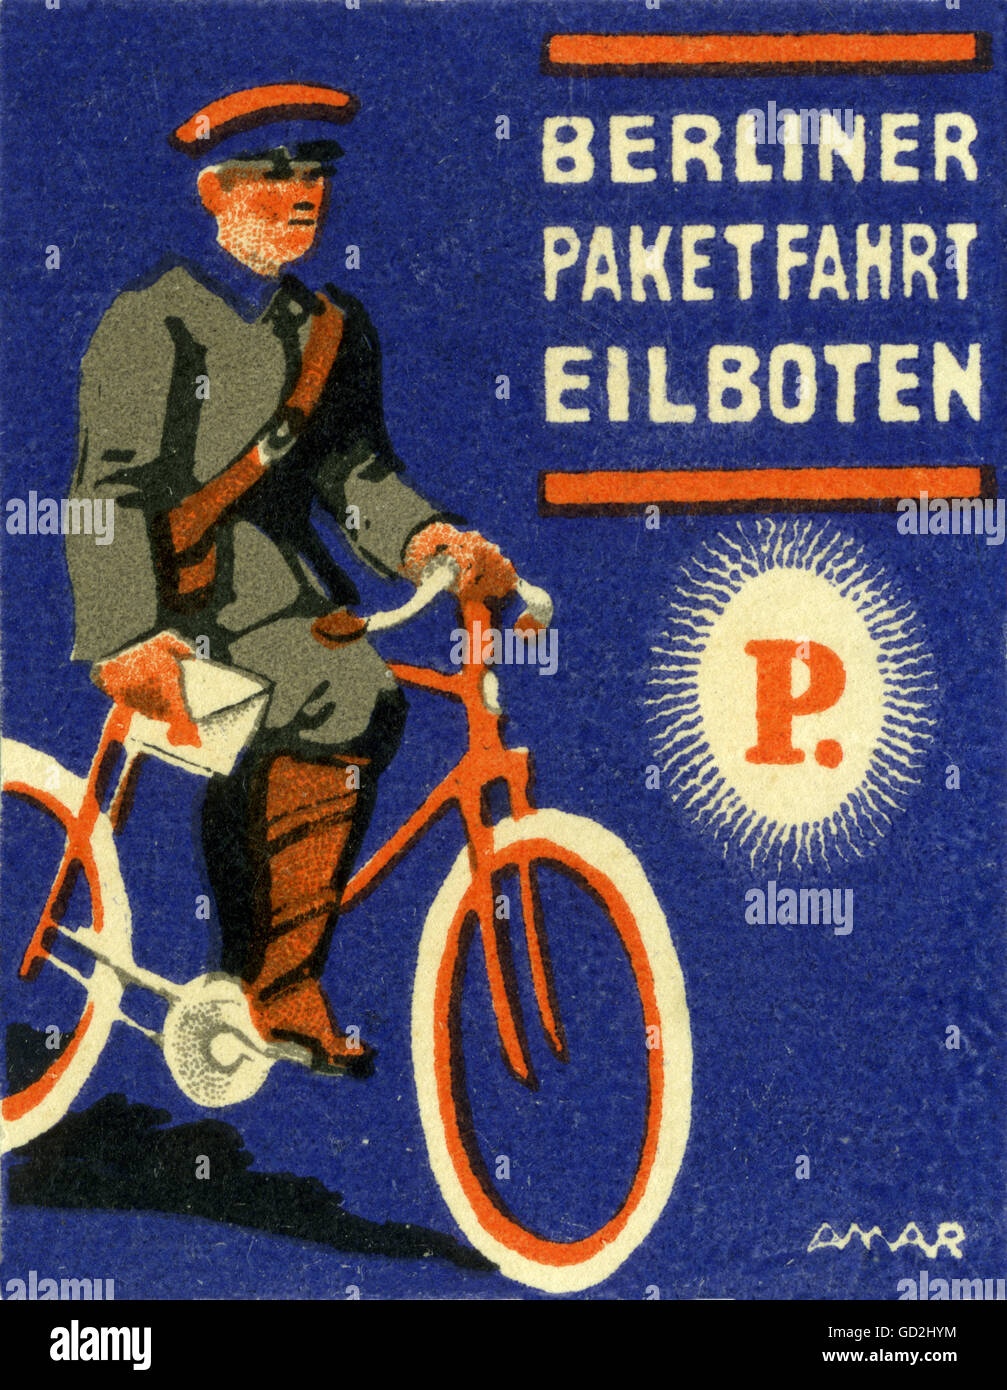 Mail, 'Berliner Paketfahrt Eilboten', timbre-affiche, messagerie avec vélo, Berlin, Allemagne, vers 1913, droits additionnels-Clearences-non disponible Banque D'Images